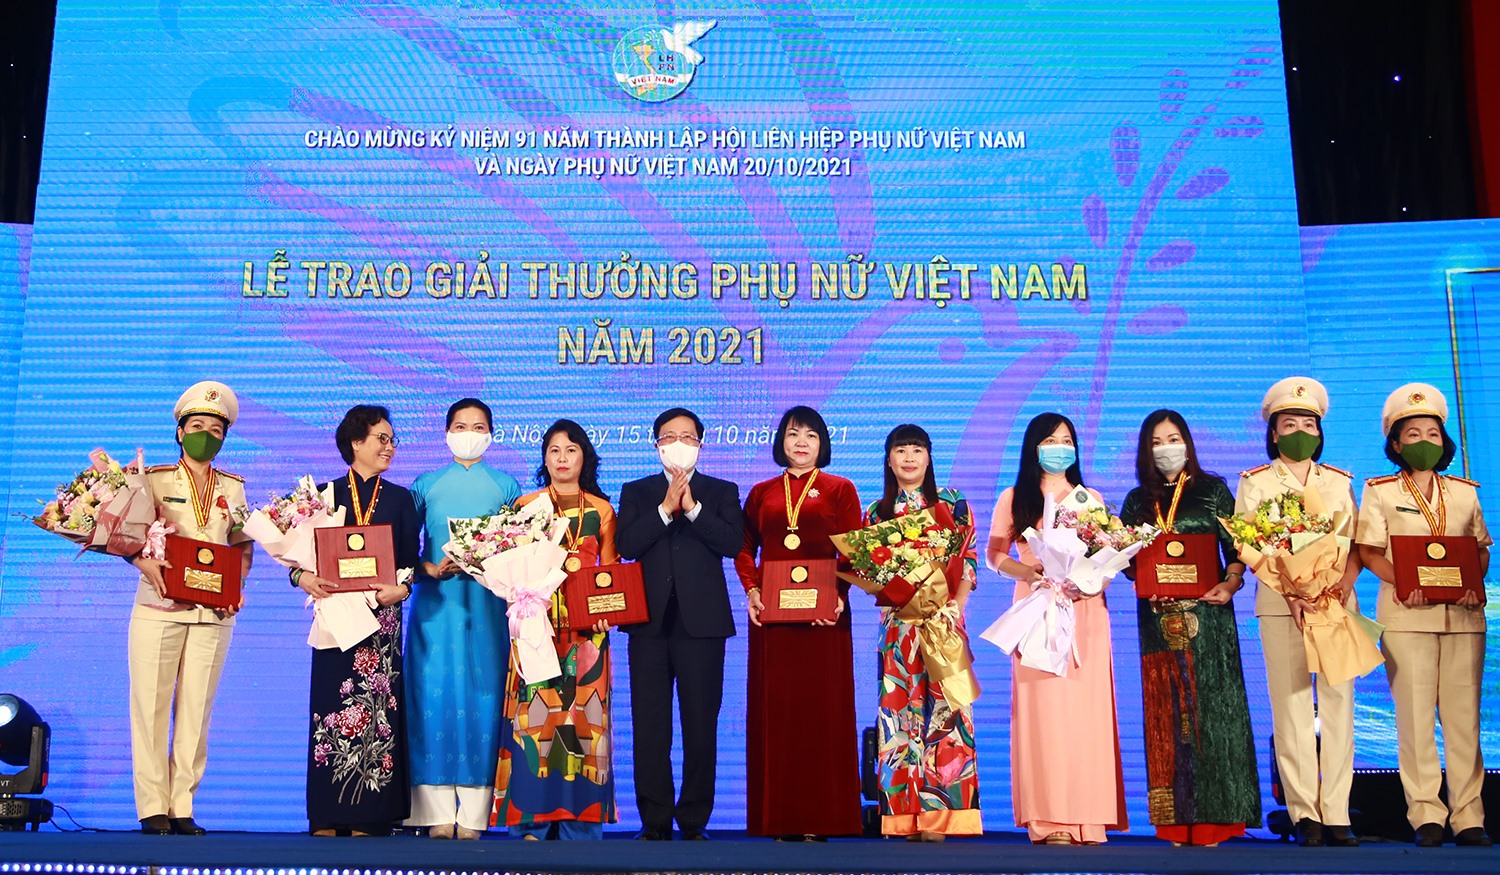 “Giải thưởng Phụ nữ Việt Nam năm 2021” được trao cho 6 tập thể và 10 cá nhân xuất sắc trên các lĩnh vực kinh tế, giáo dục, văn hóa, y học, công tác xã hội, phát triển cộng đồng. Ảnh: VGP/Hải Minh